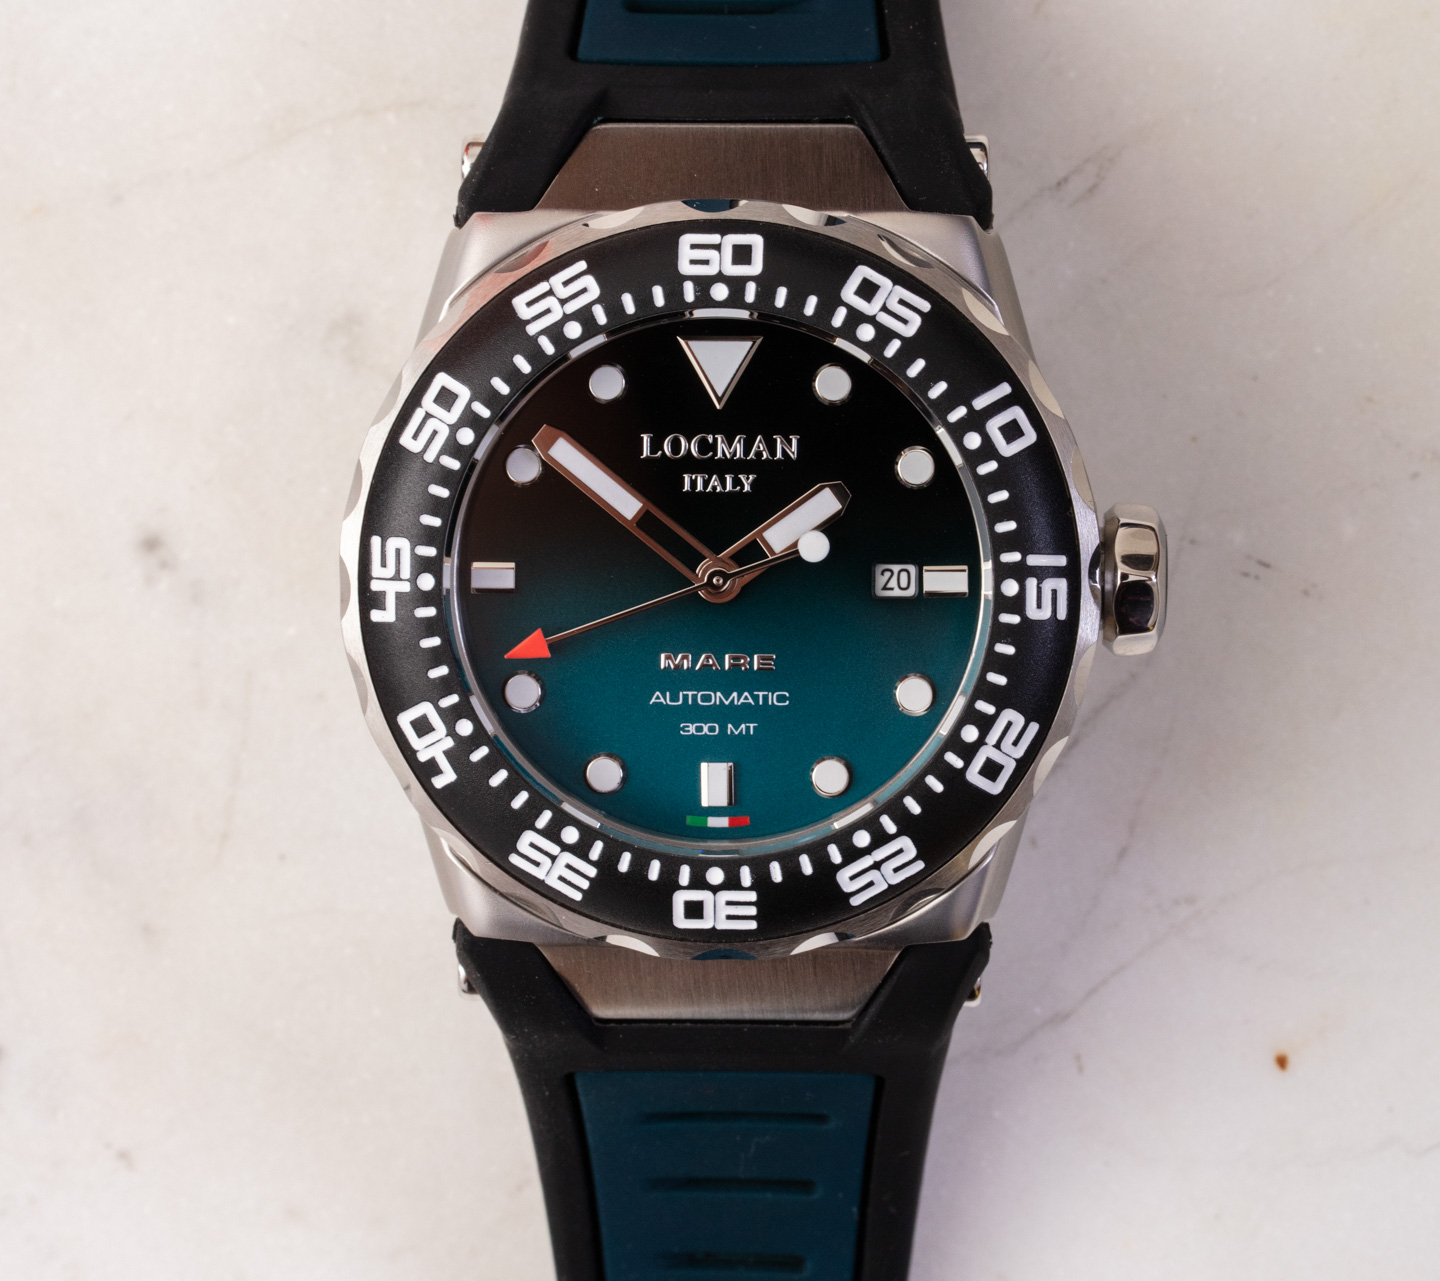 入门级高级手表品牌Locman推出的潜水表Mare 300MT如何